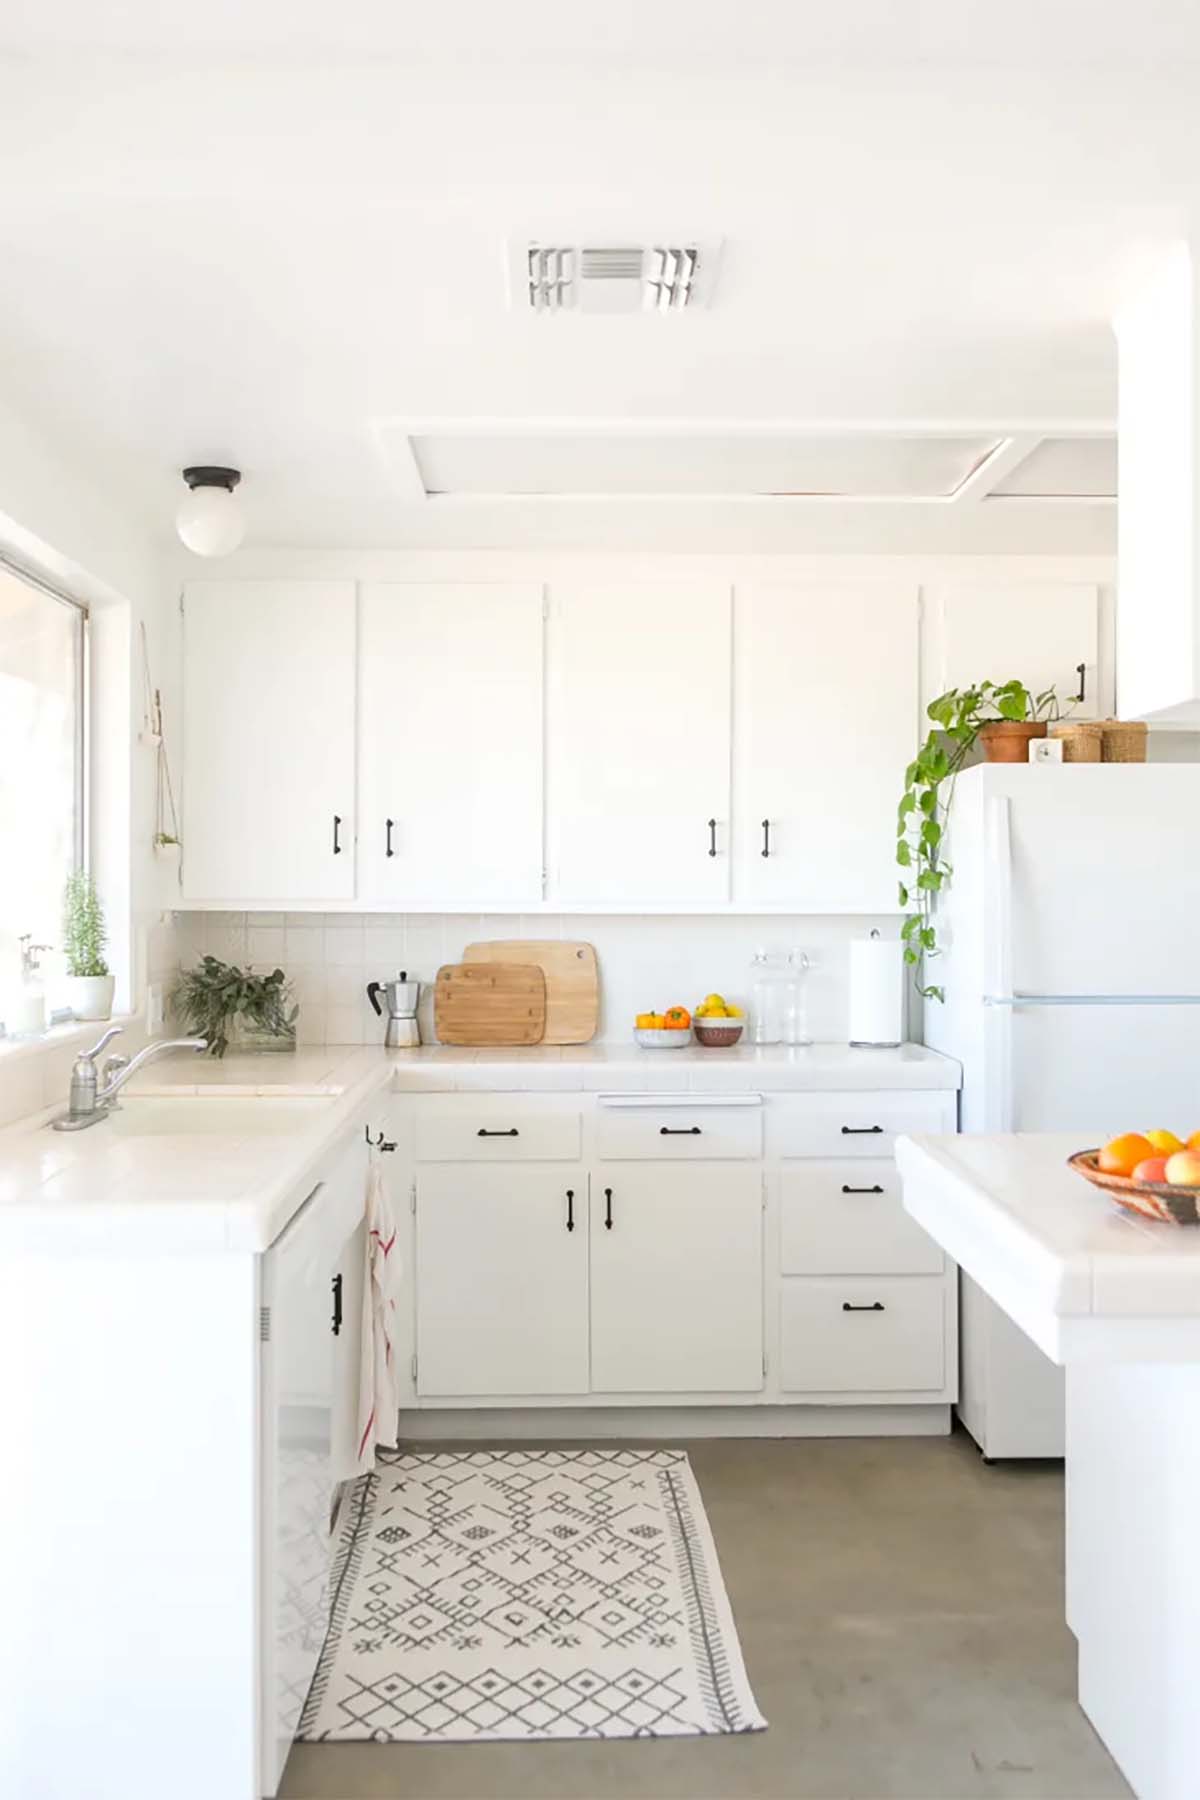 دکوراسیون آشپزخانه با کابینت های سفید و روشن